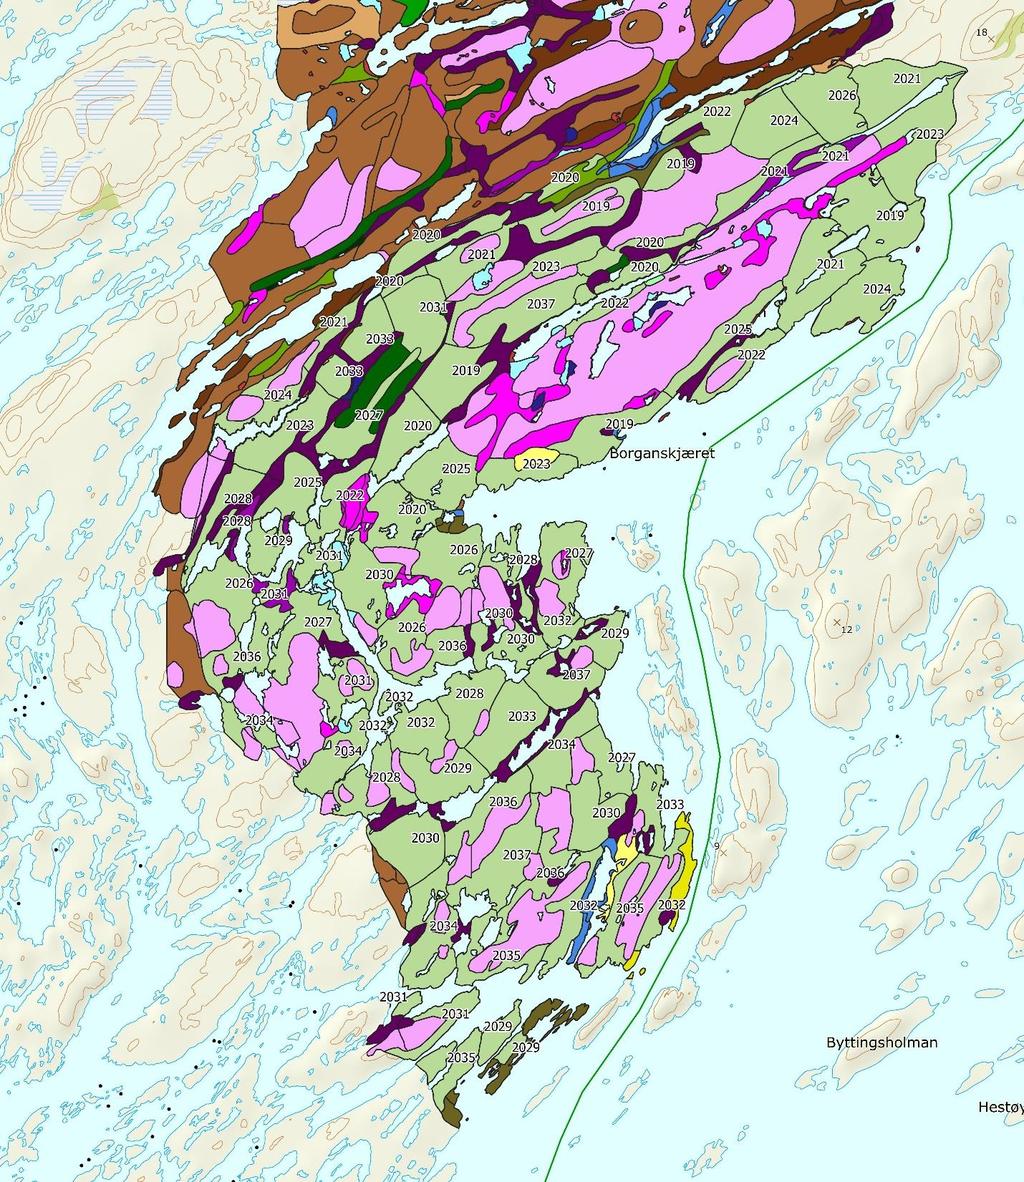 Figur 8. Forslag til brenning øst på Kalvøya 2019-37 med avgrensing av potensielle brannflater (lys grønn) og år for brenning. Vegetasjonskart i bakgrunnen.